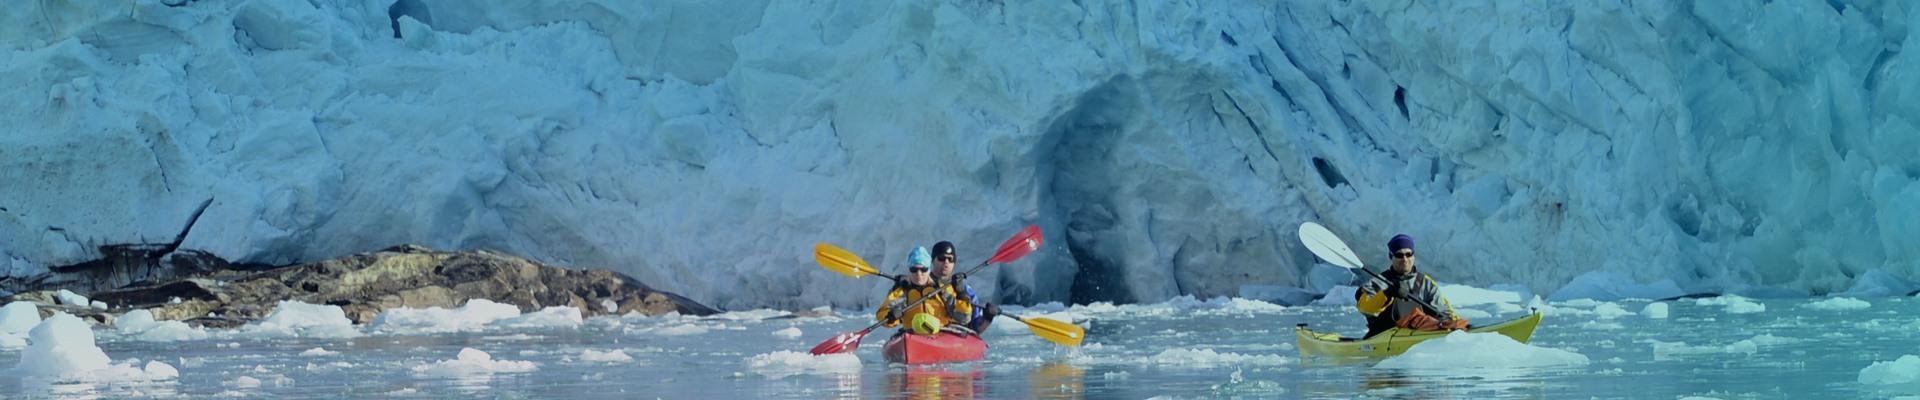 Spitsbergen Kayaking Trip